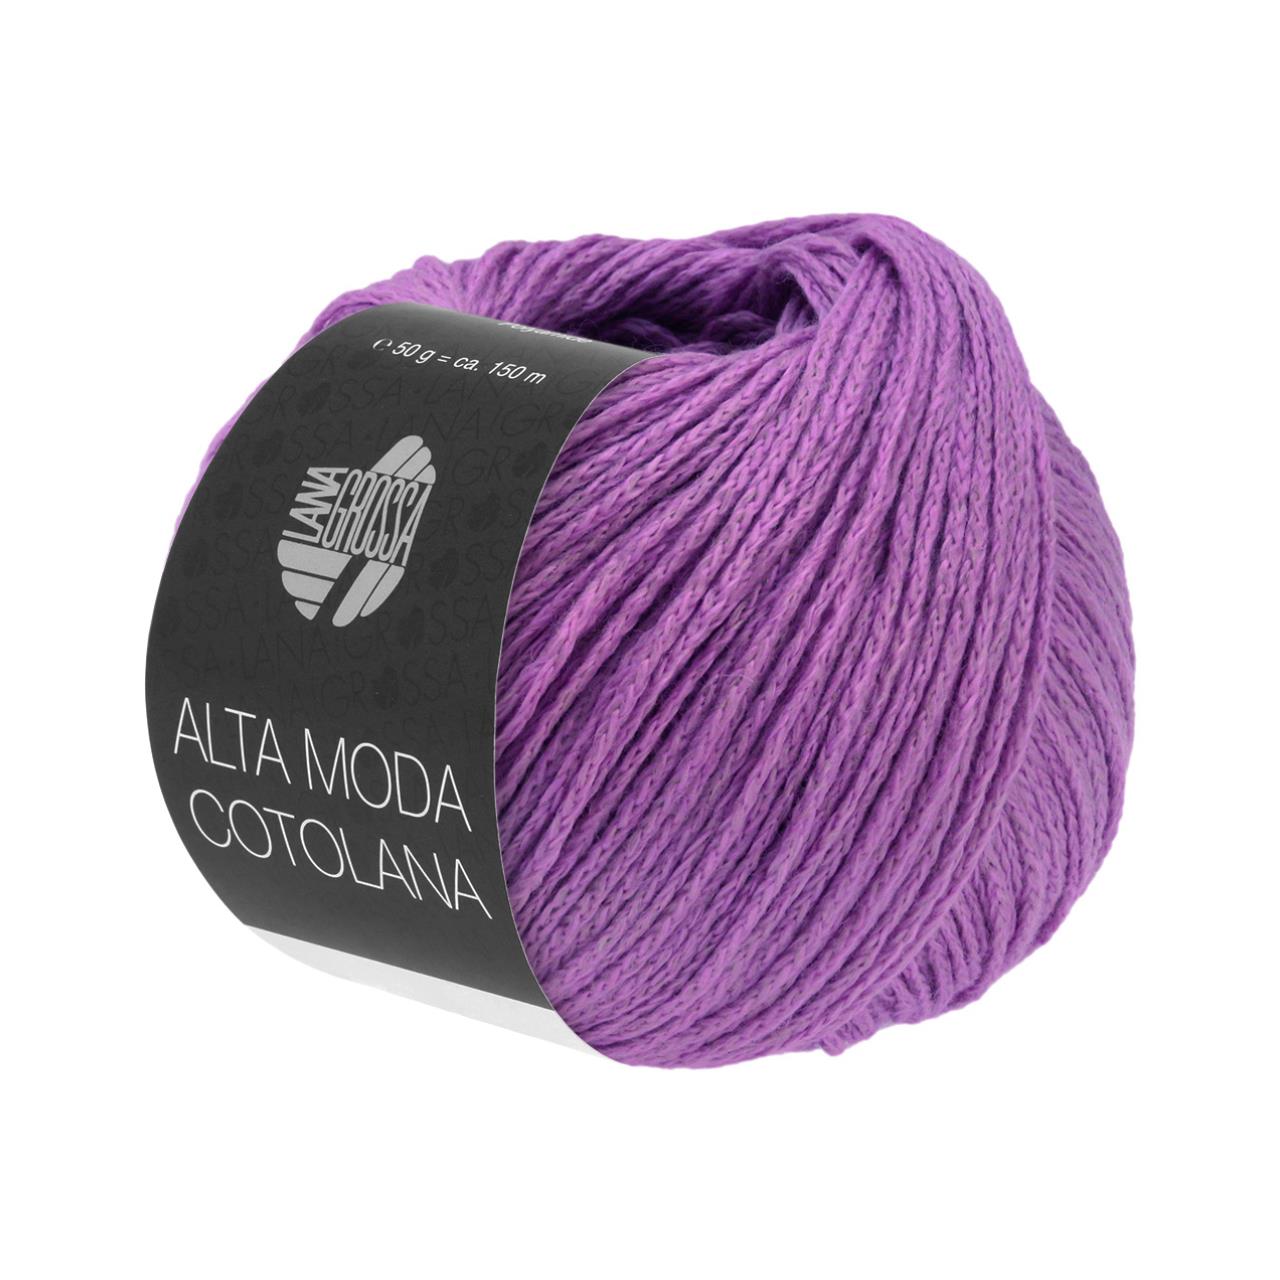 Alta Moda Cotolana 55 Lavendel